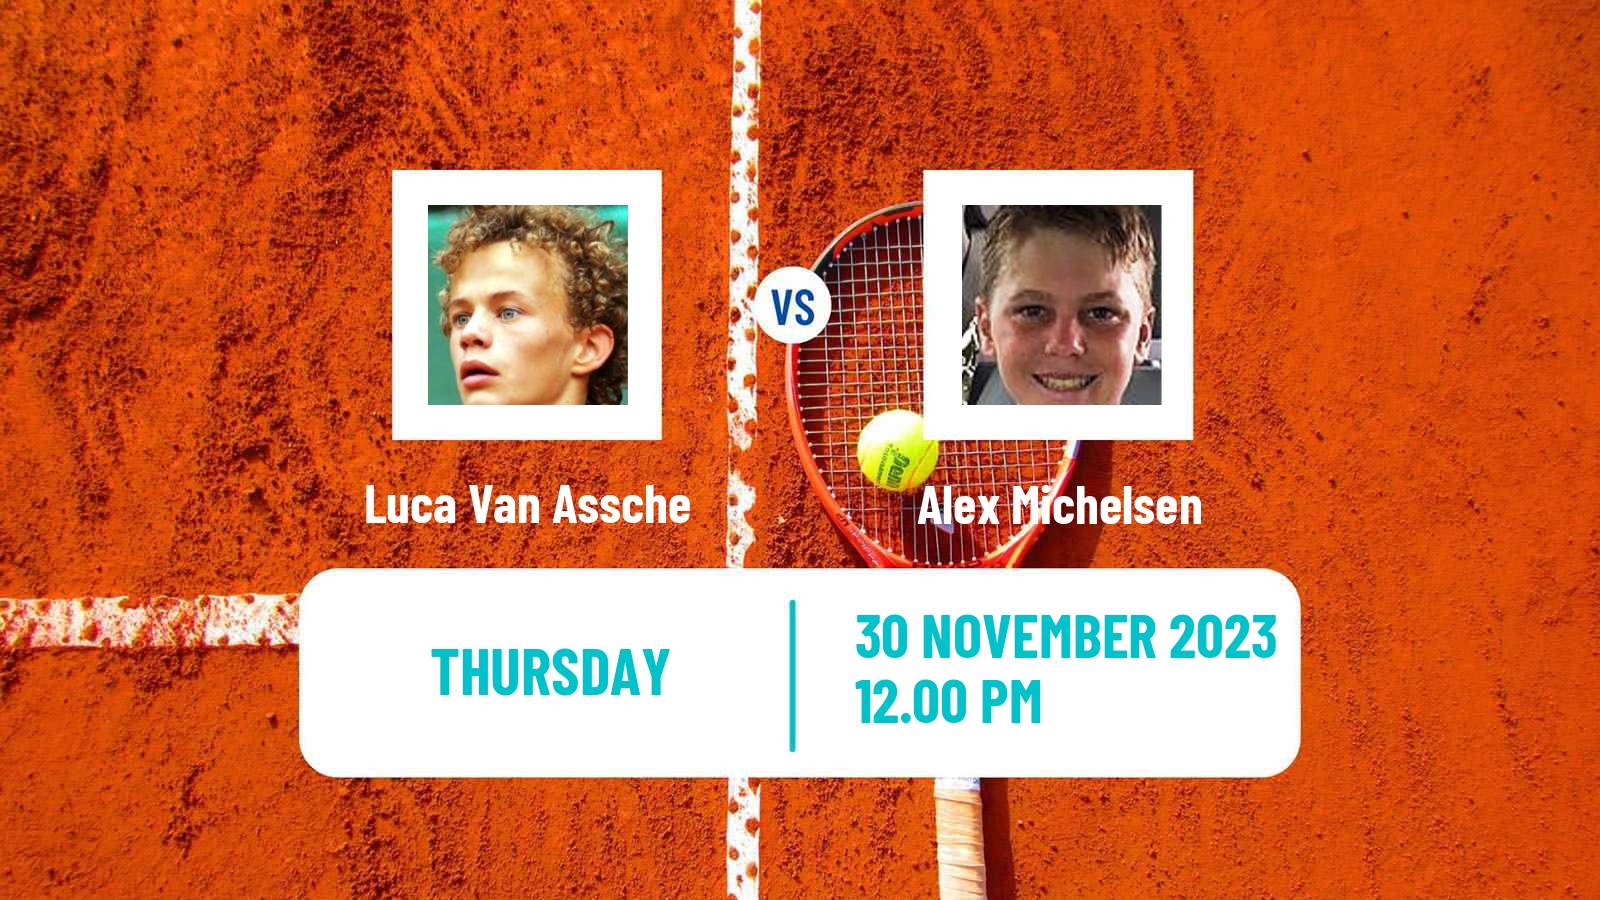 Tennis ATP Next Gen Finals Luca Van Assche - Alex Michelsen